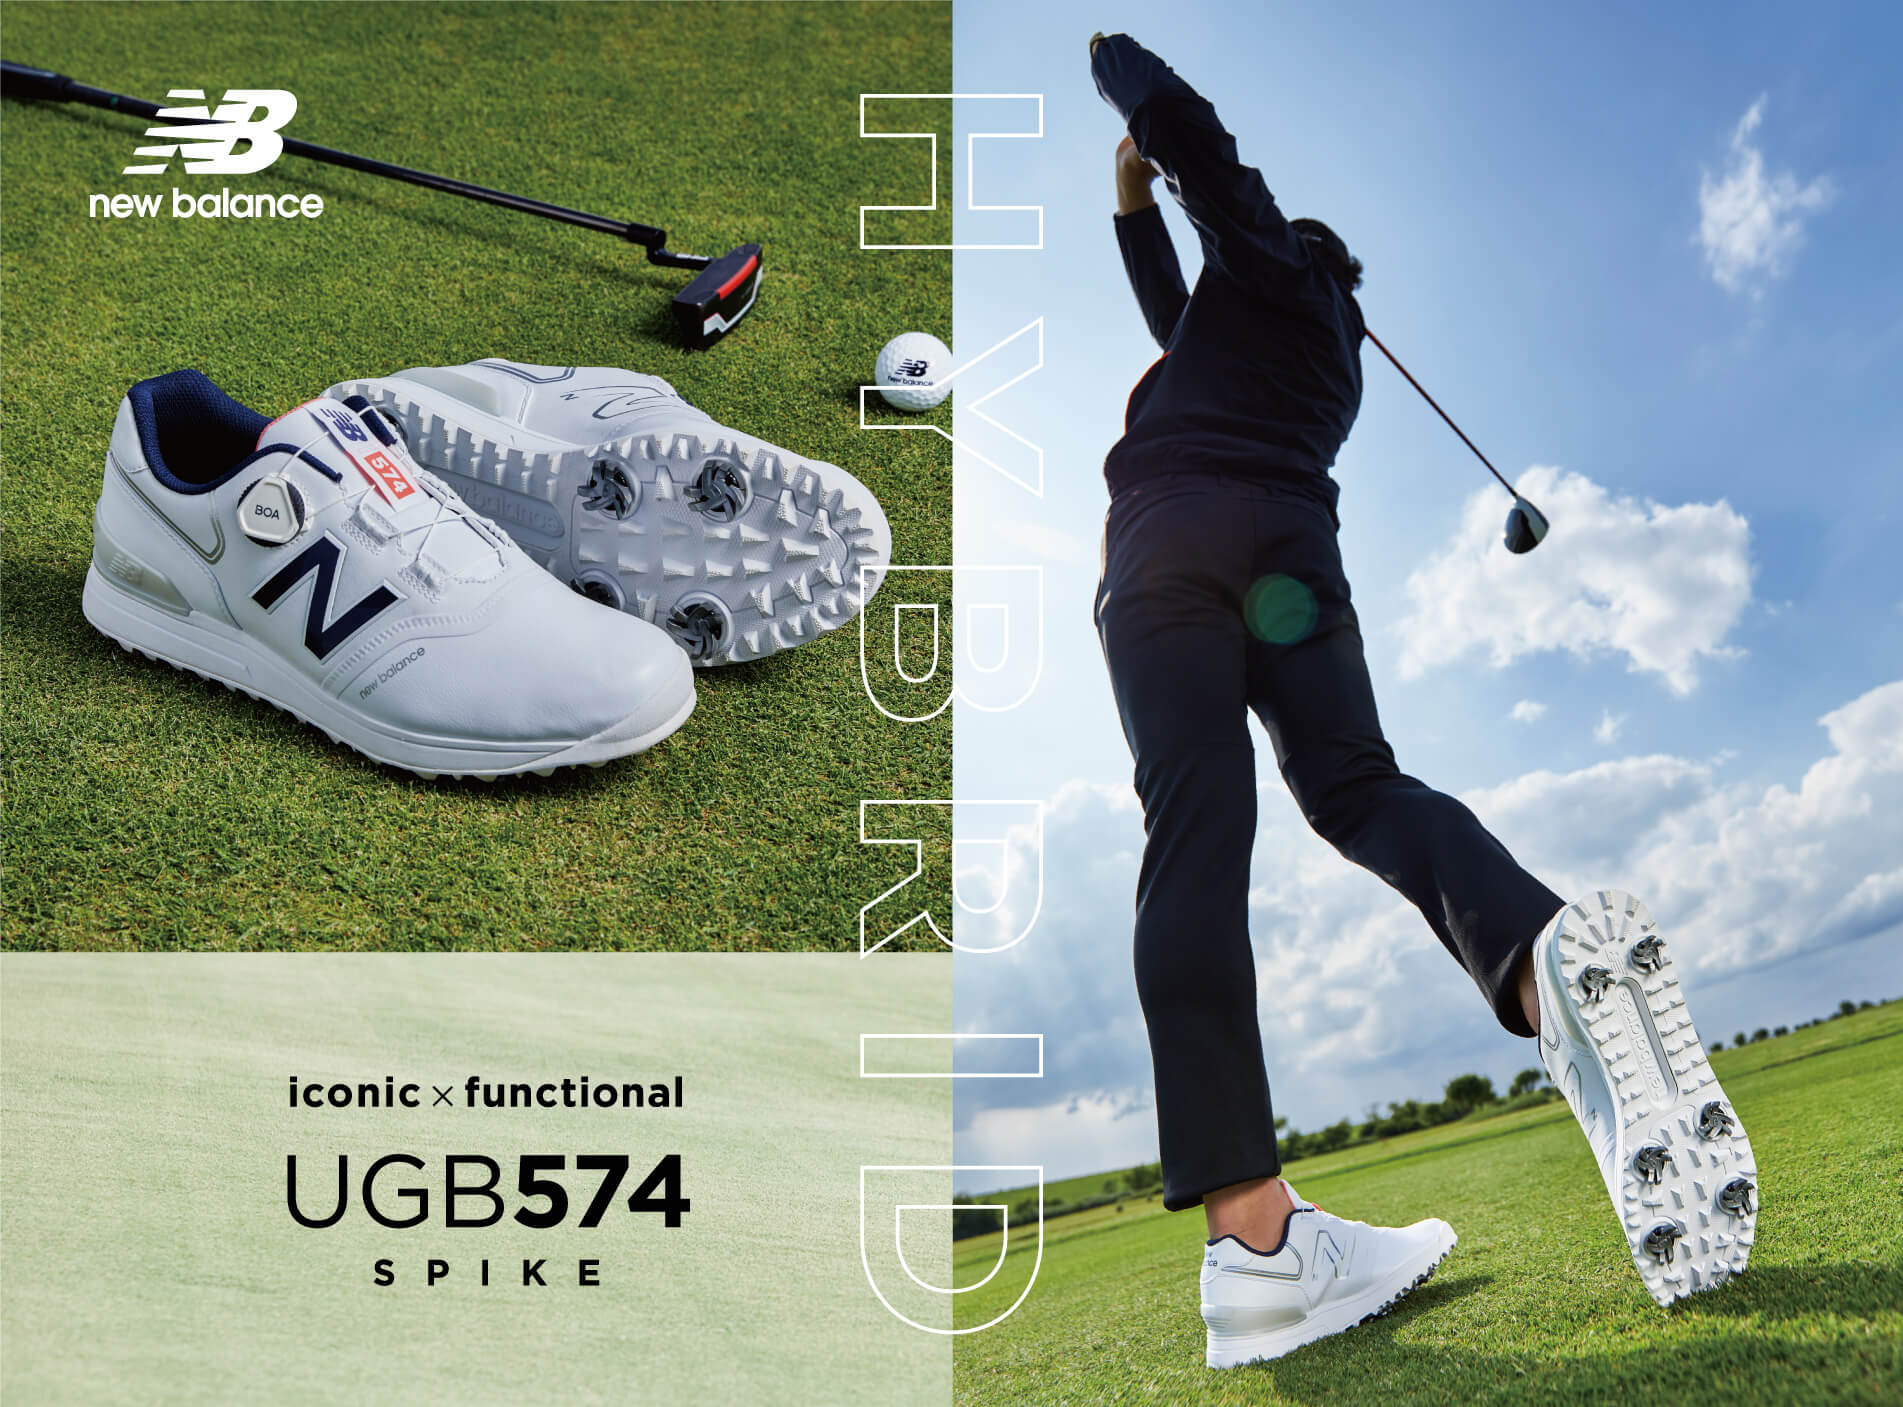 New Balanceゴルフシューズ「UGBS574シリーズ」プロが認める足入れ